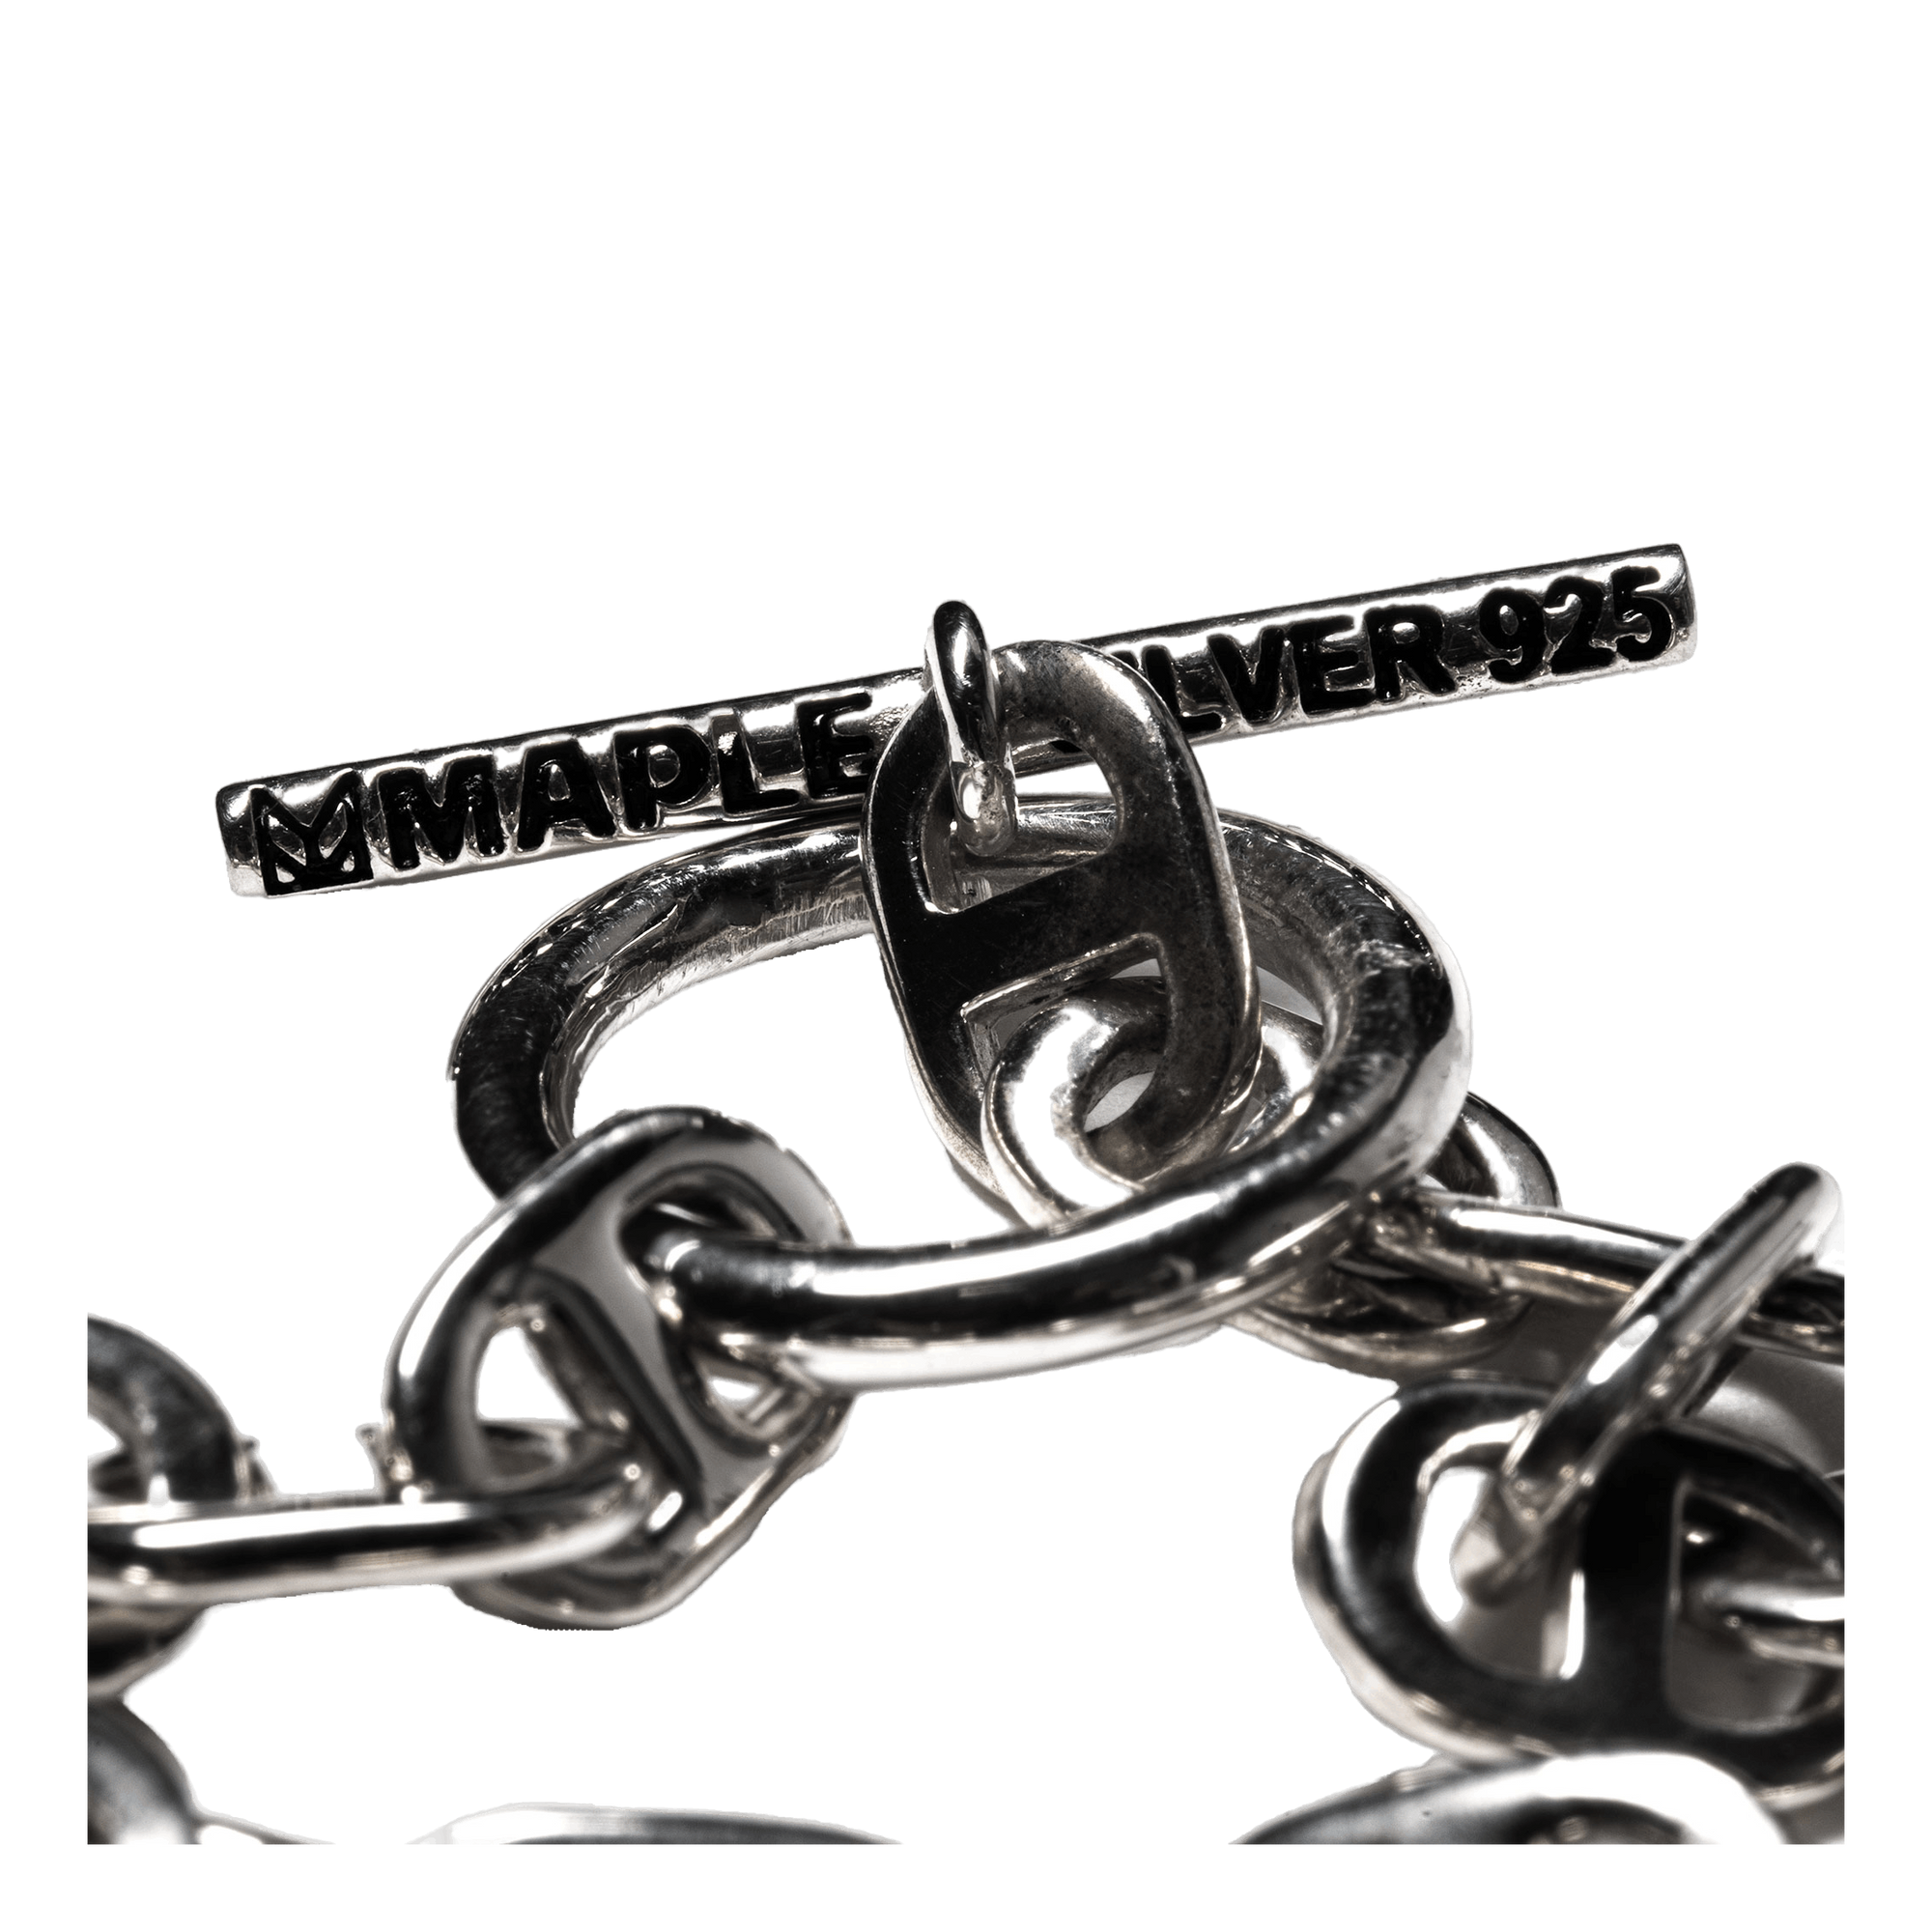 Chain Link Bracelet 7mm Silver 925